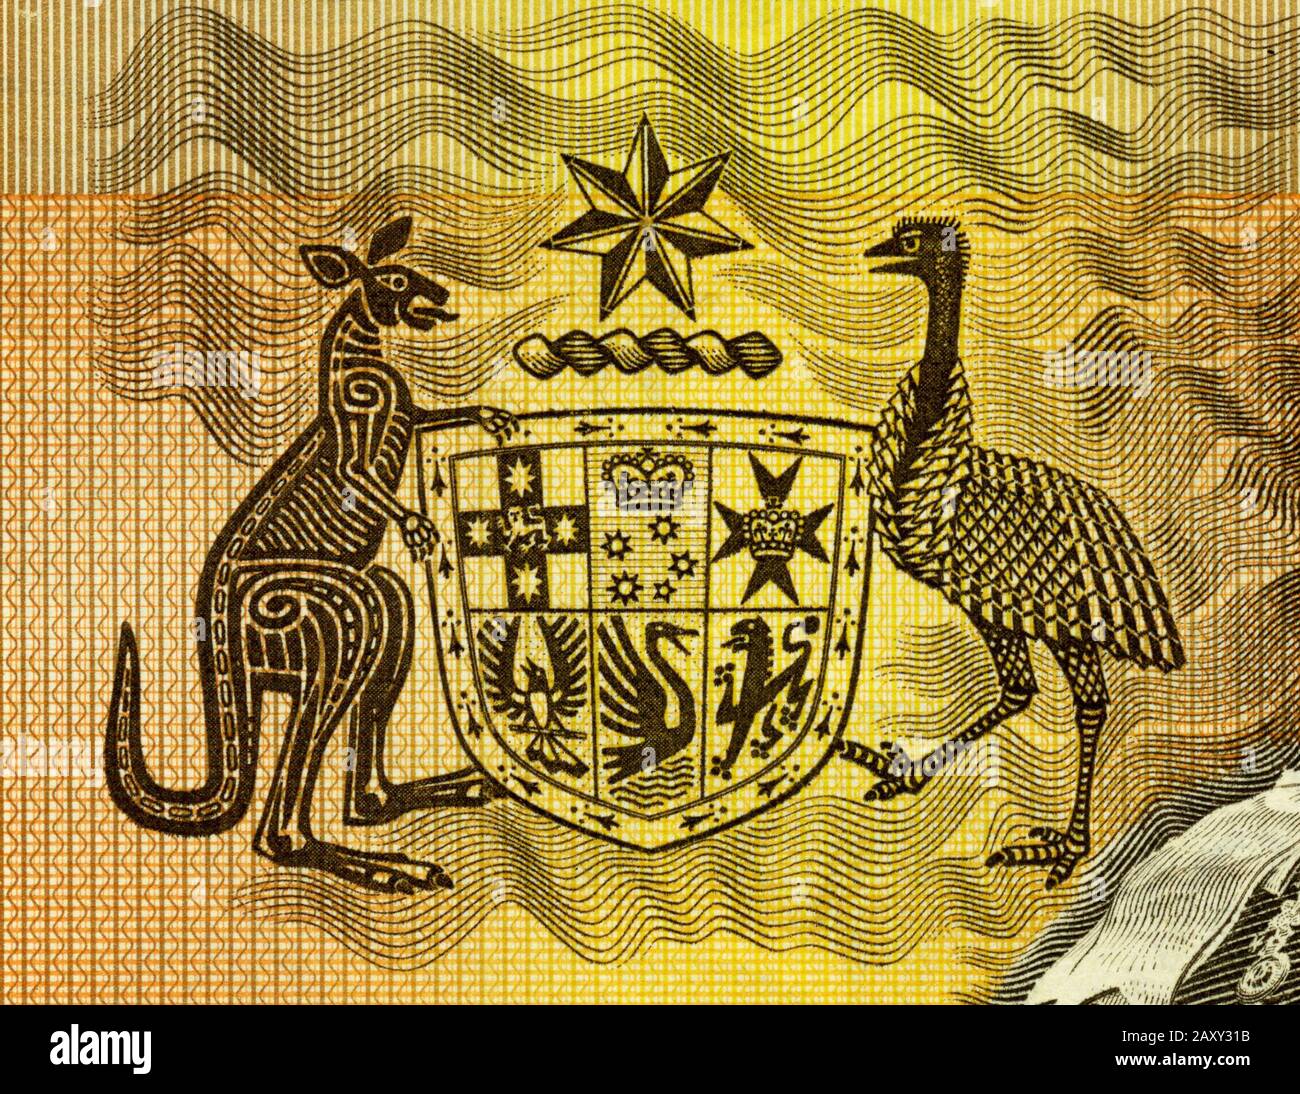 Lo stemma australiano eseguito in un tema aborigene sulla vecchia nota bancaria da 1 dollaro Foto Stock